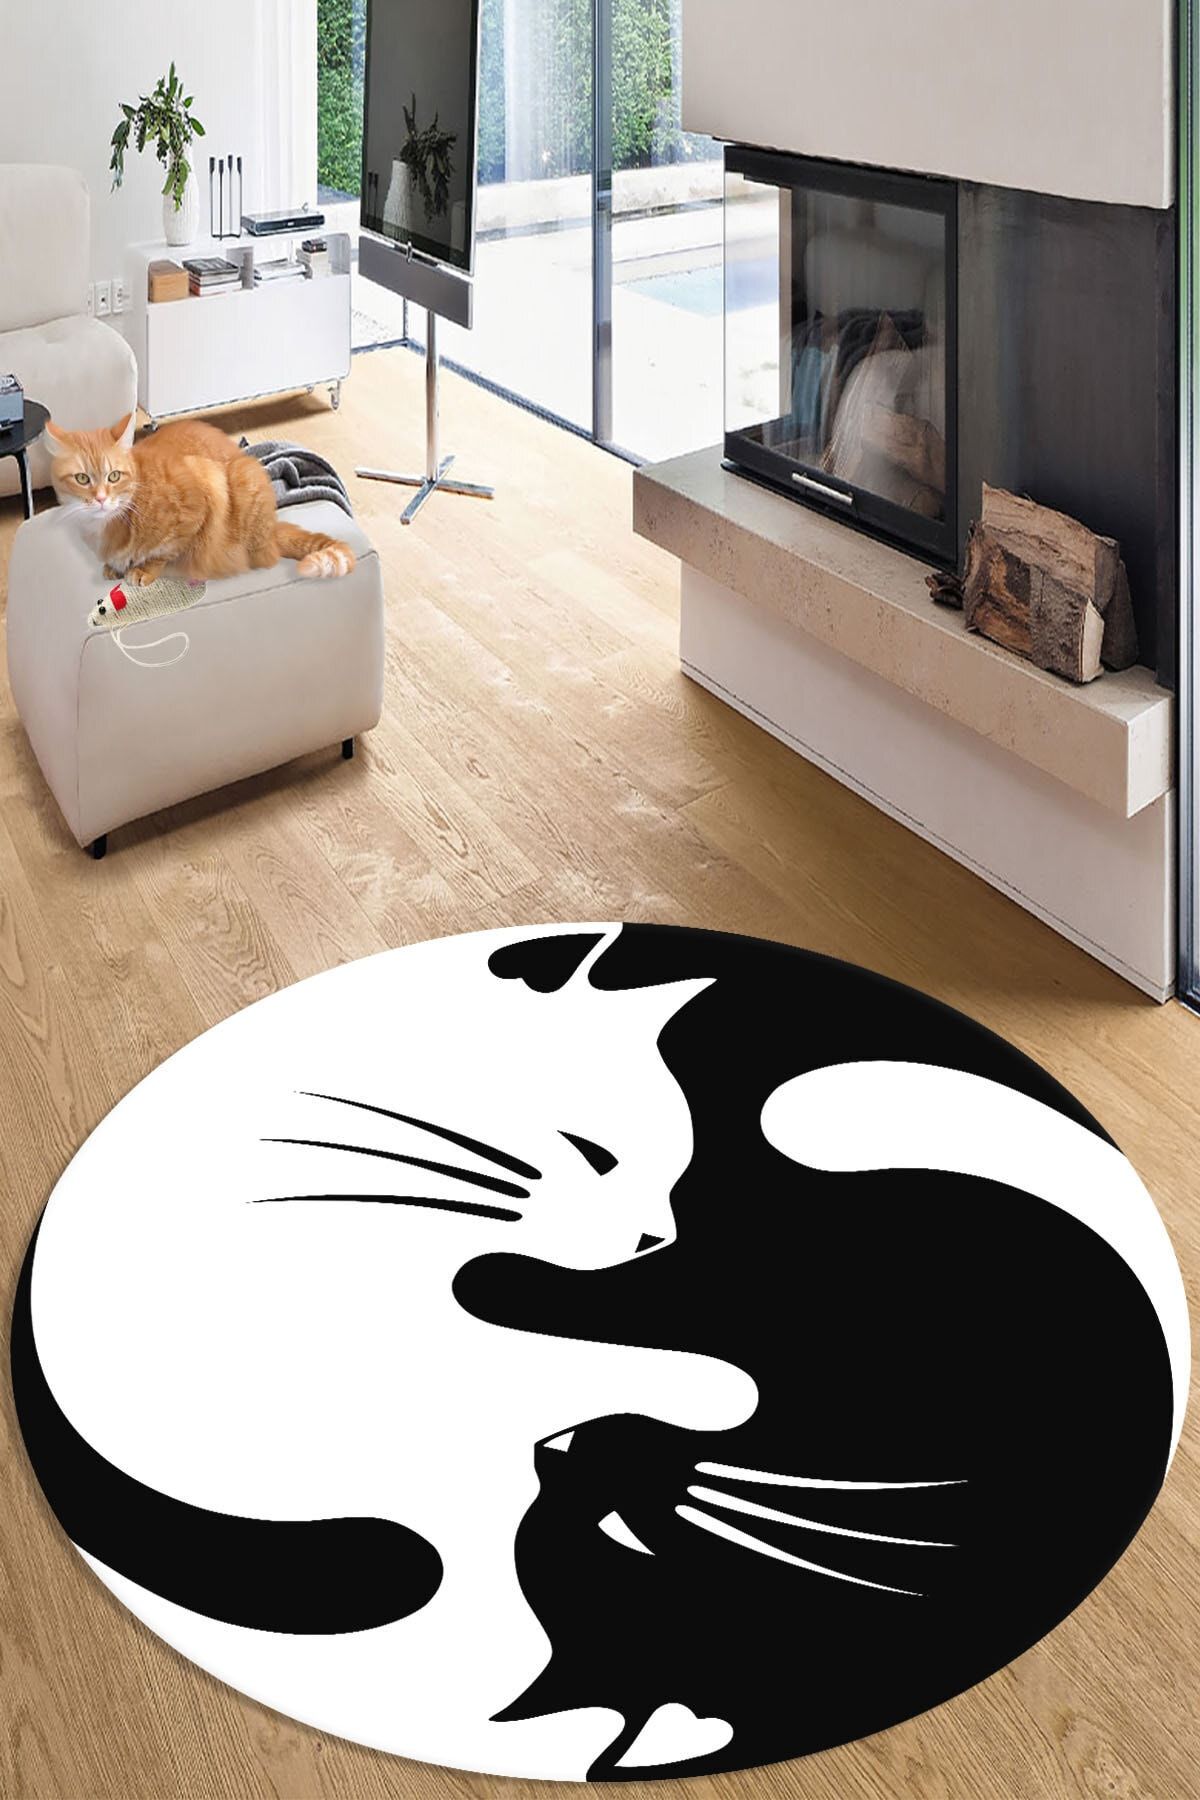 RISSE Dijital Baskılı Kaymaz Taban Yıkanabilir Kedi Desenli Siyah Beyaz Yuvarlak Salon Halısı